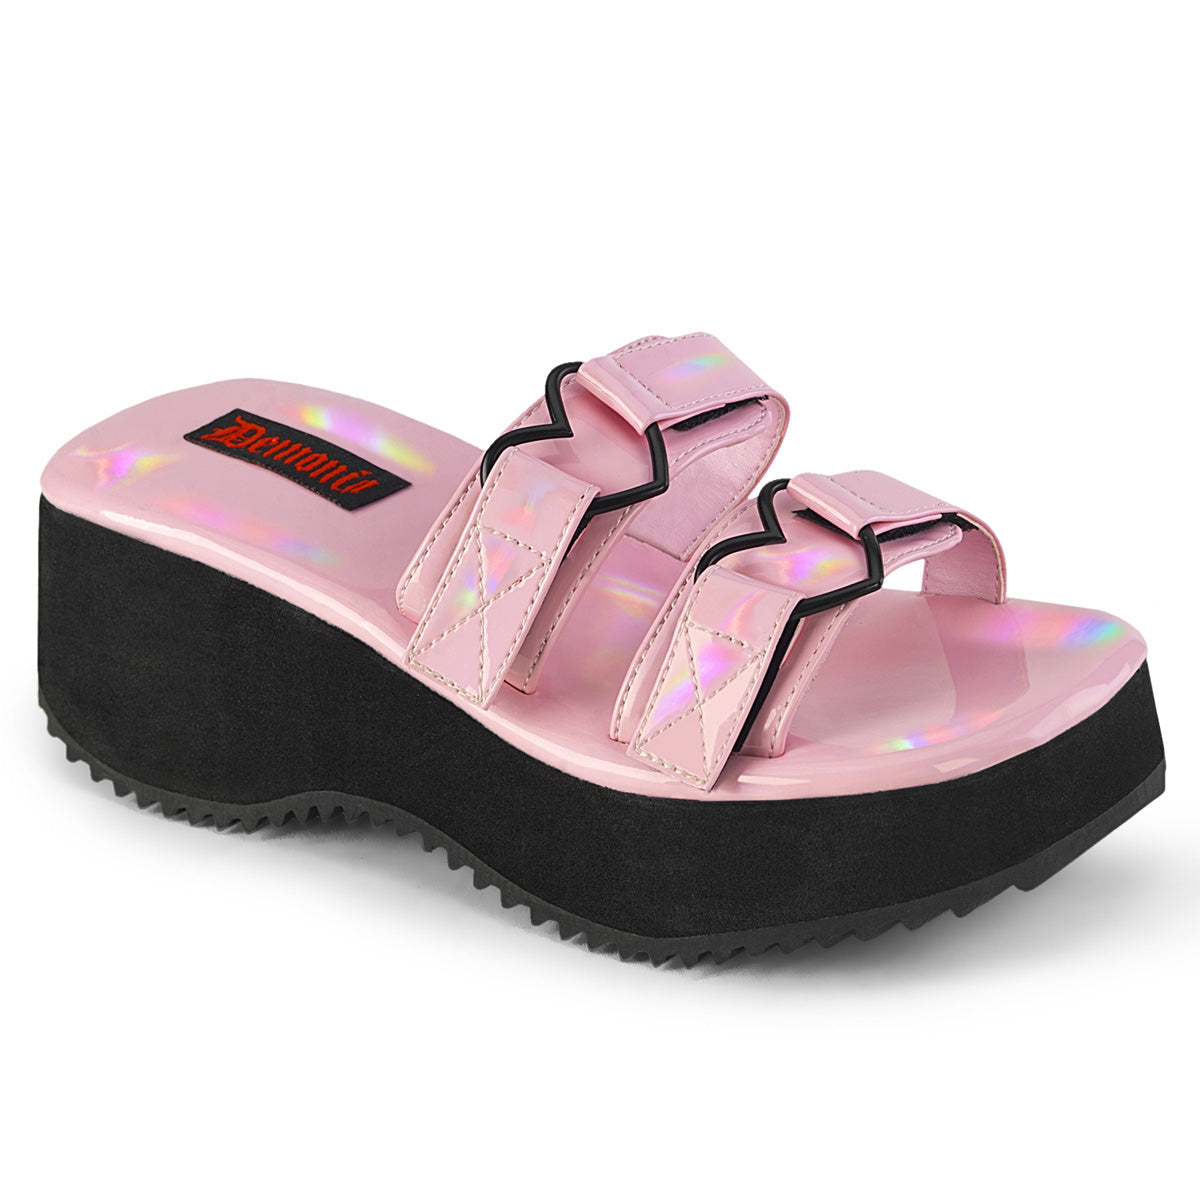 FLIP-12 Alternative Footwear Demonia Women's Sandals B. Pink Holo Pat